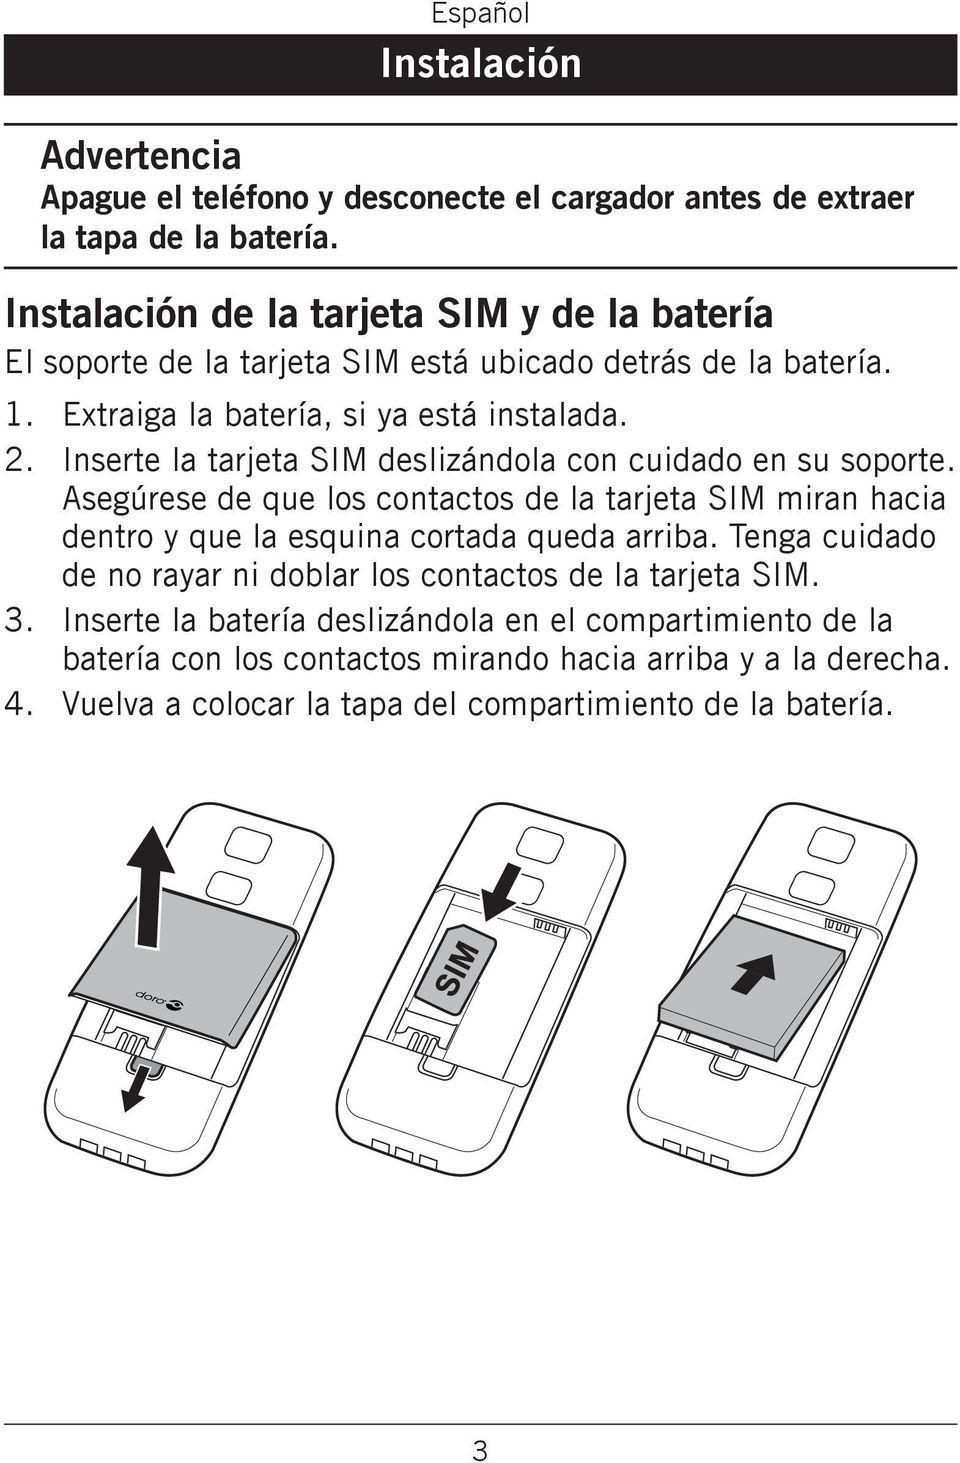 de que los contactos de la tarjeta SIM miran hacia dentro y que la esquina cortada queda arriba Tenga cuidado de no rayar ni doblar los contactos de la tarjeta SIM Inserte